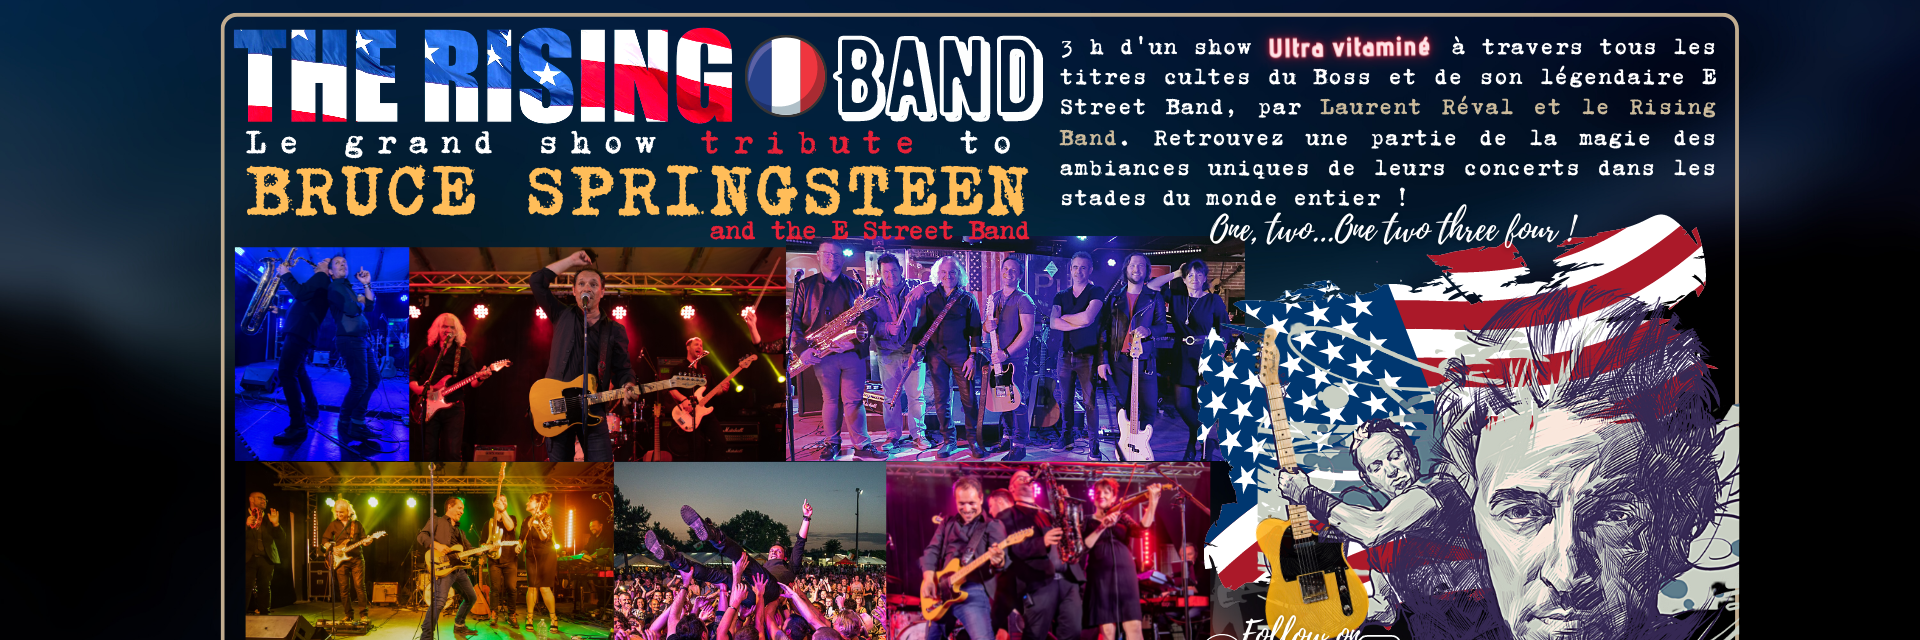 TRIBUTE SPRINGSTEEN The Rising Band, groupe de musique Rock en représentation à Hérault - photo de couverture n° 4